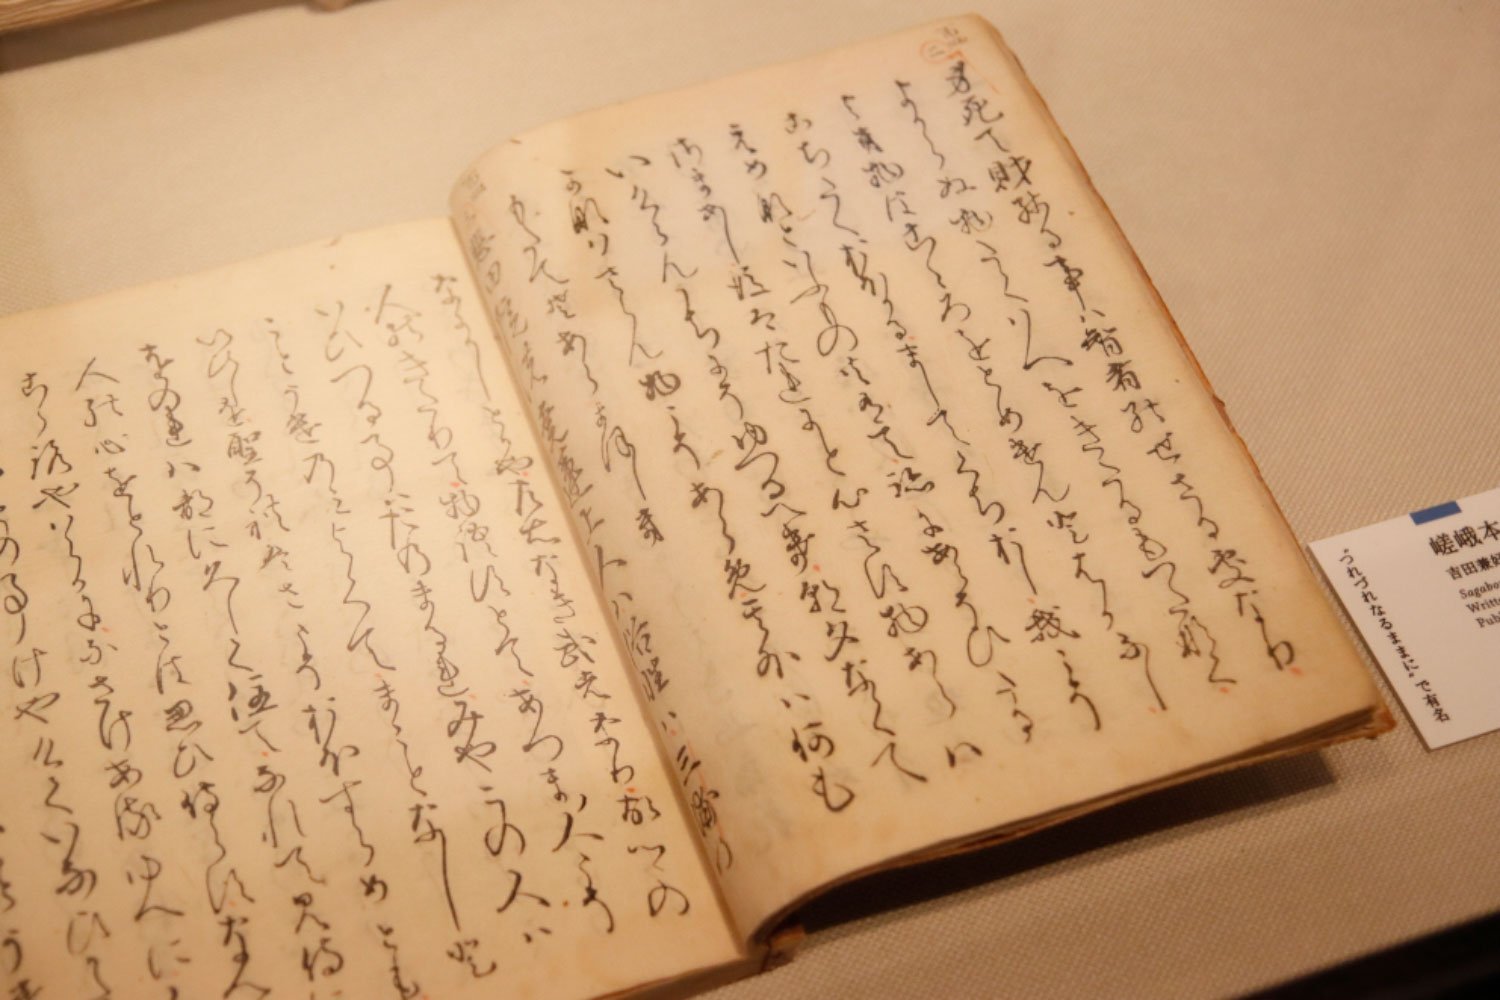 約400年前に制作された嵯峨本『徒然草』。手書きのような滑らかな漢字とひらがなだが、木活字による印刷だ。